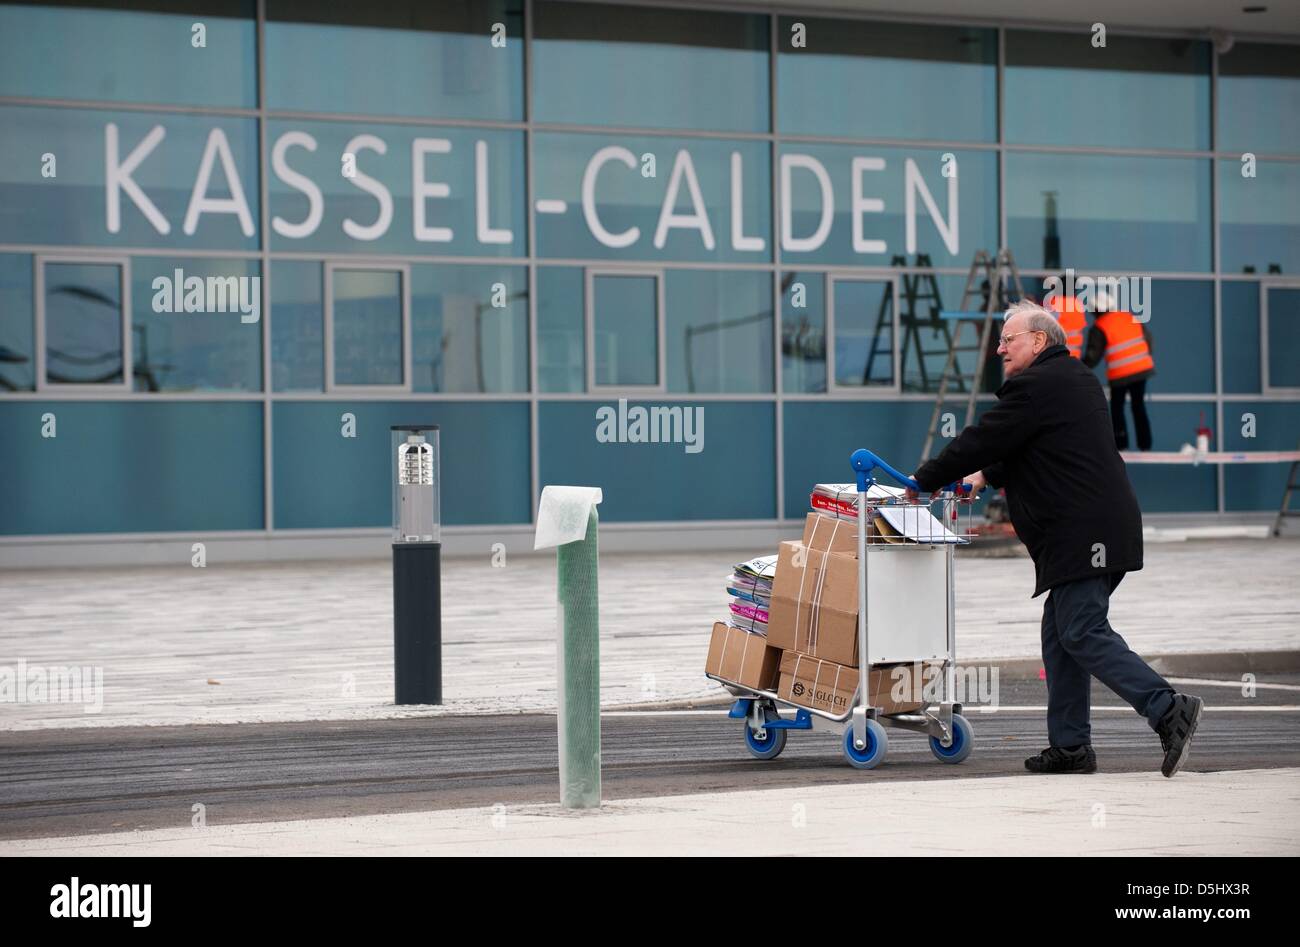 Un homme transporte des boîtes sur un chariot à Kassel Calden Airport de Calden, Allemagne, 03 avril 2013. Après un an et demi de la planification, l'évaluation et la construction de la nouvelle aéroport Kassel Calden sera ouverte le 04 avril 2013. Photo : UWE ZUCCHI Banque D'Images